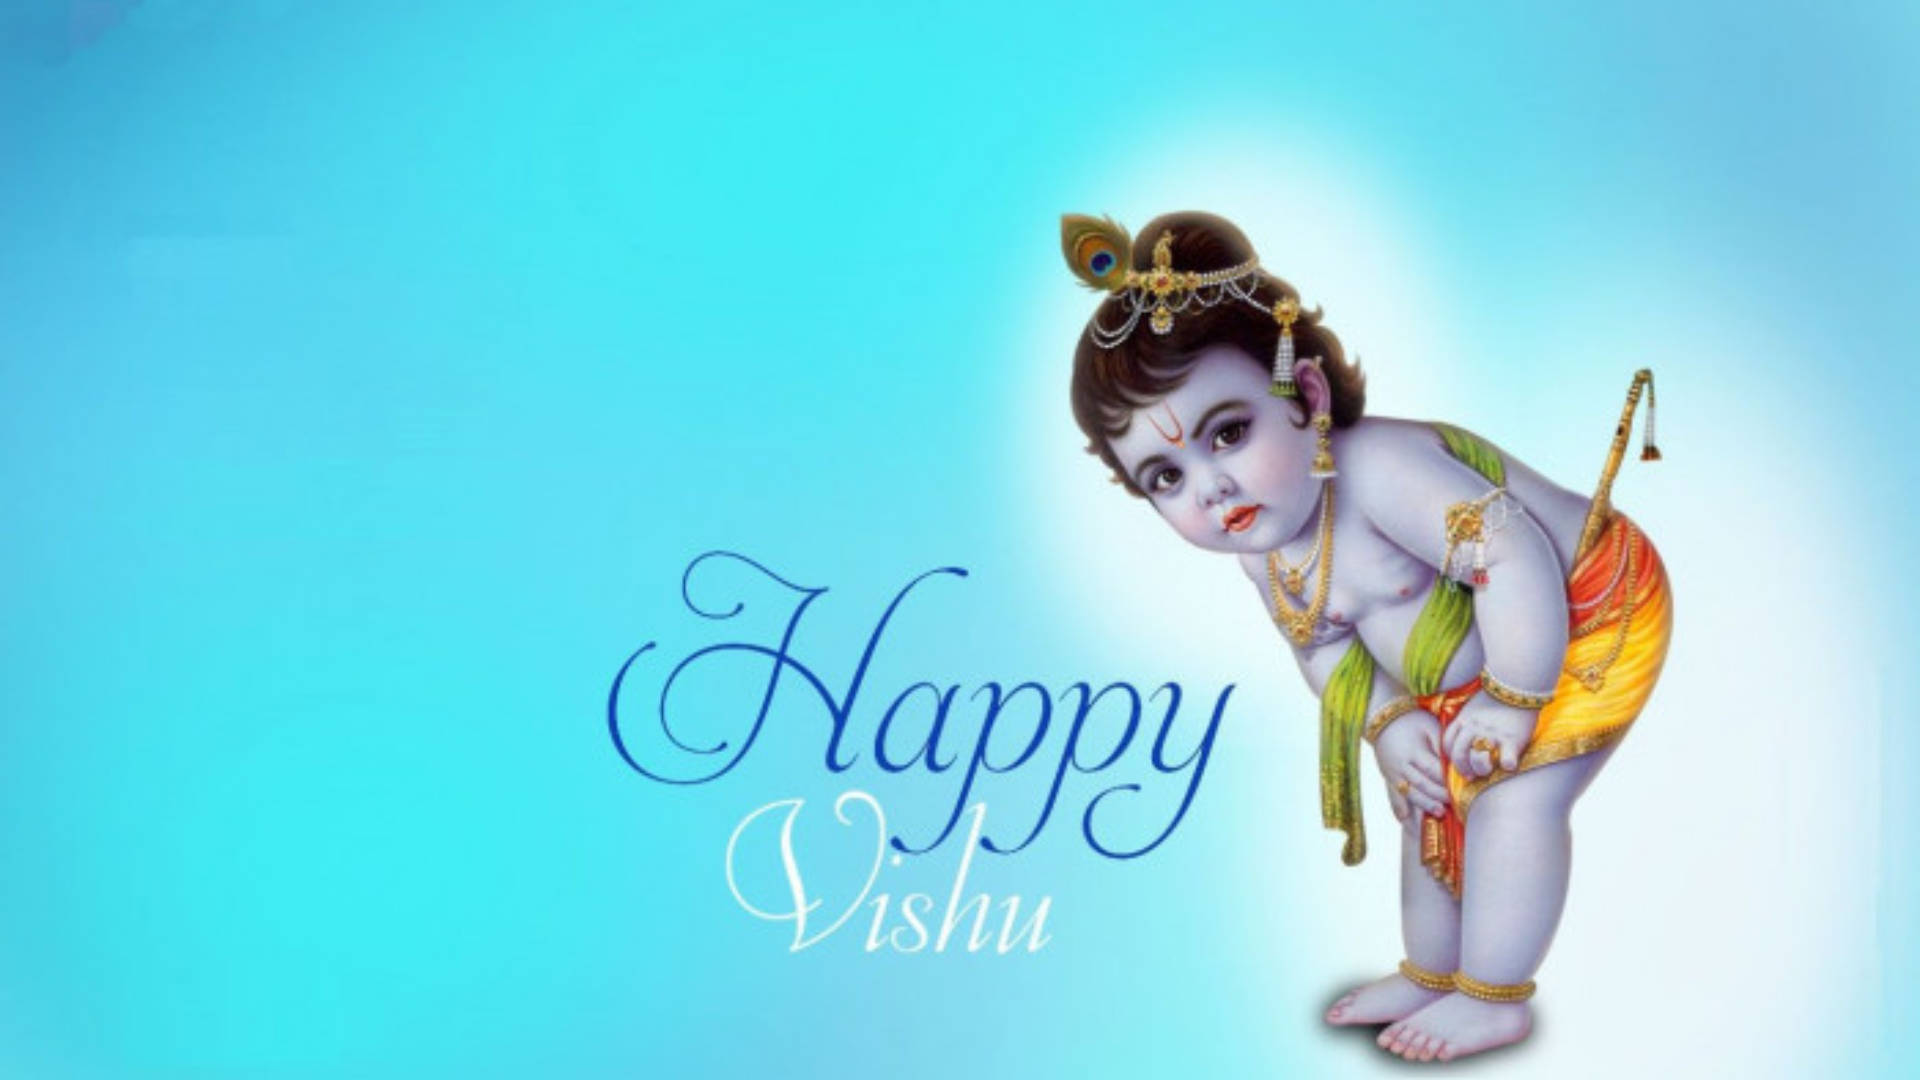 Imagende Saludo De Vishu Feliz En Color Azul Fondo de pantalla